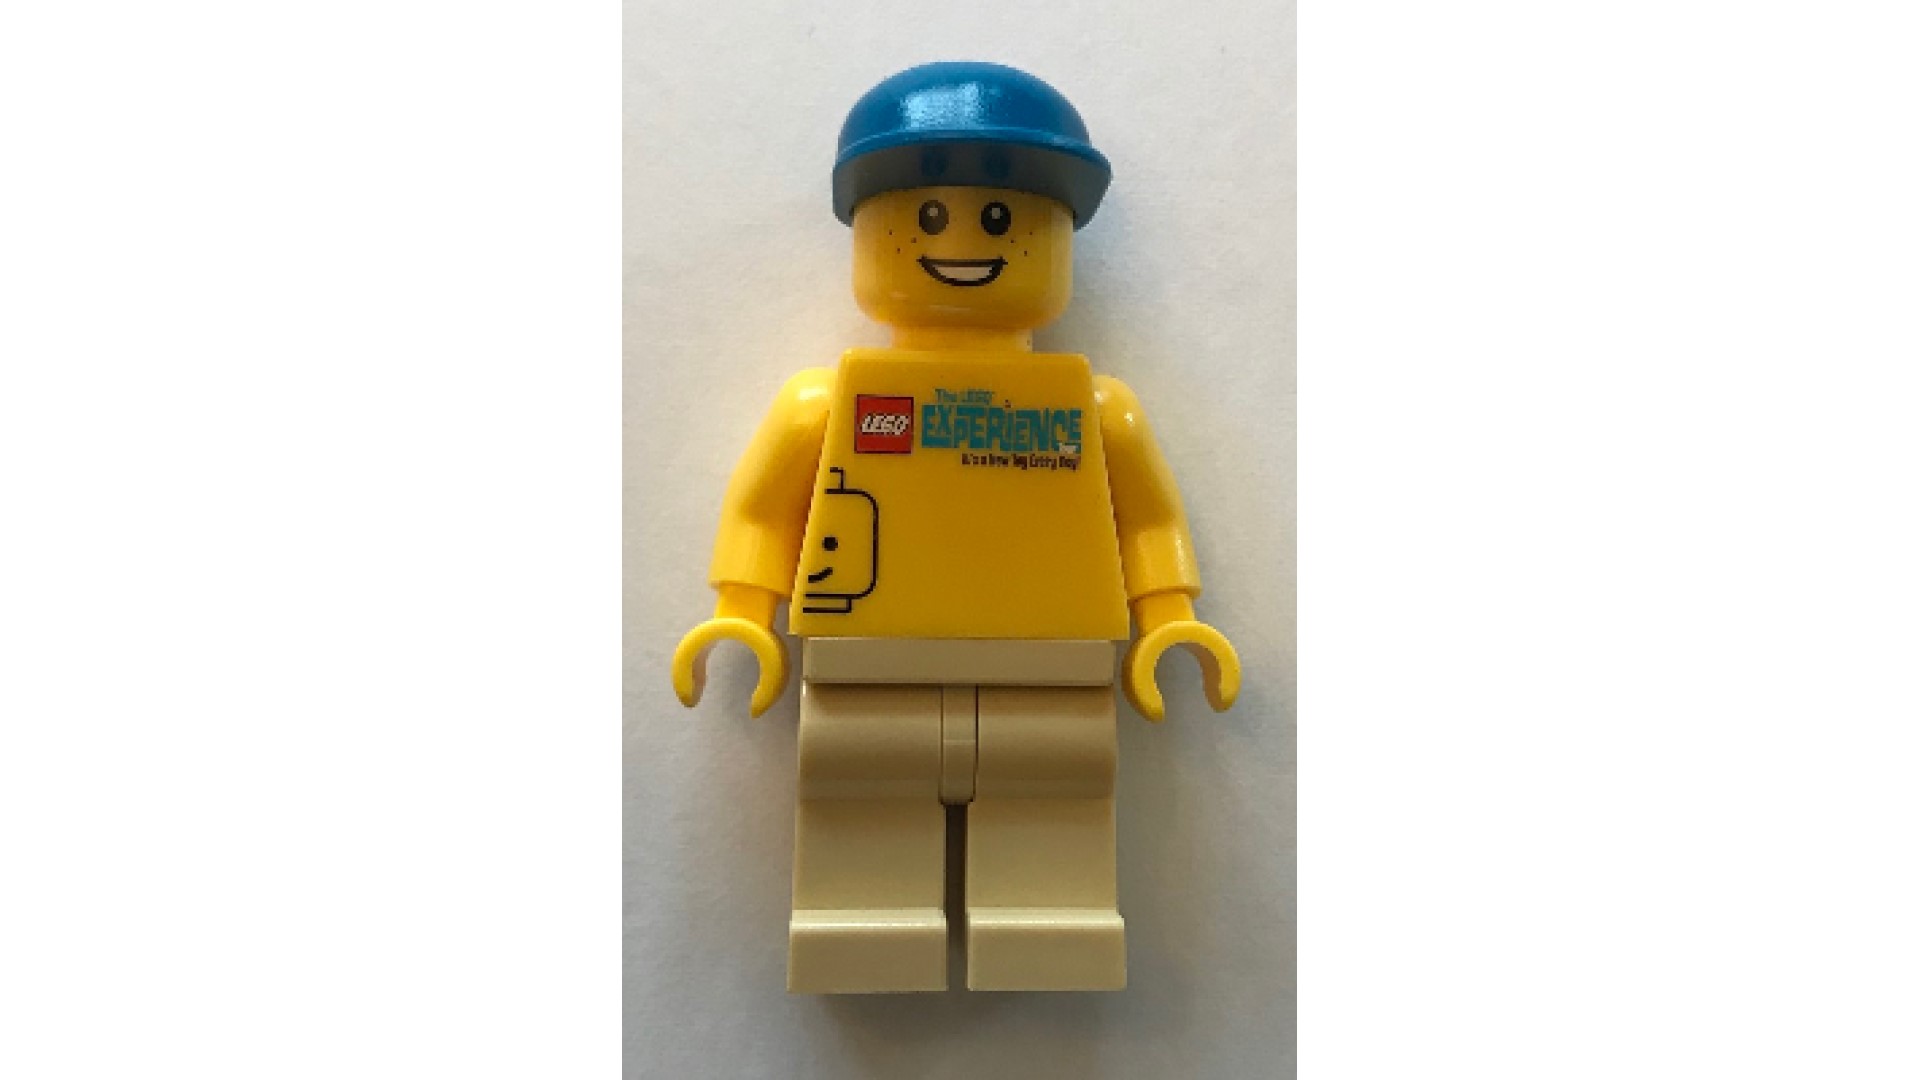 The rarest Lego minifigures ever made